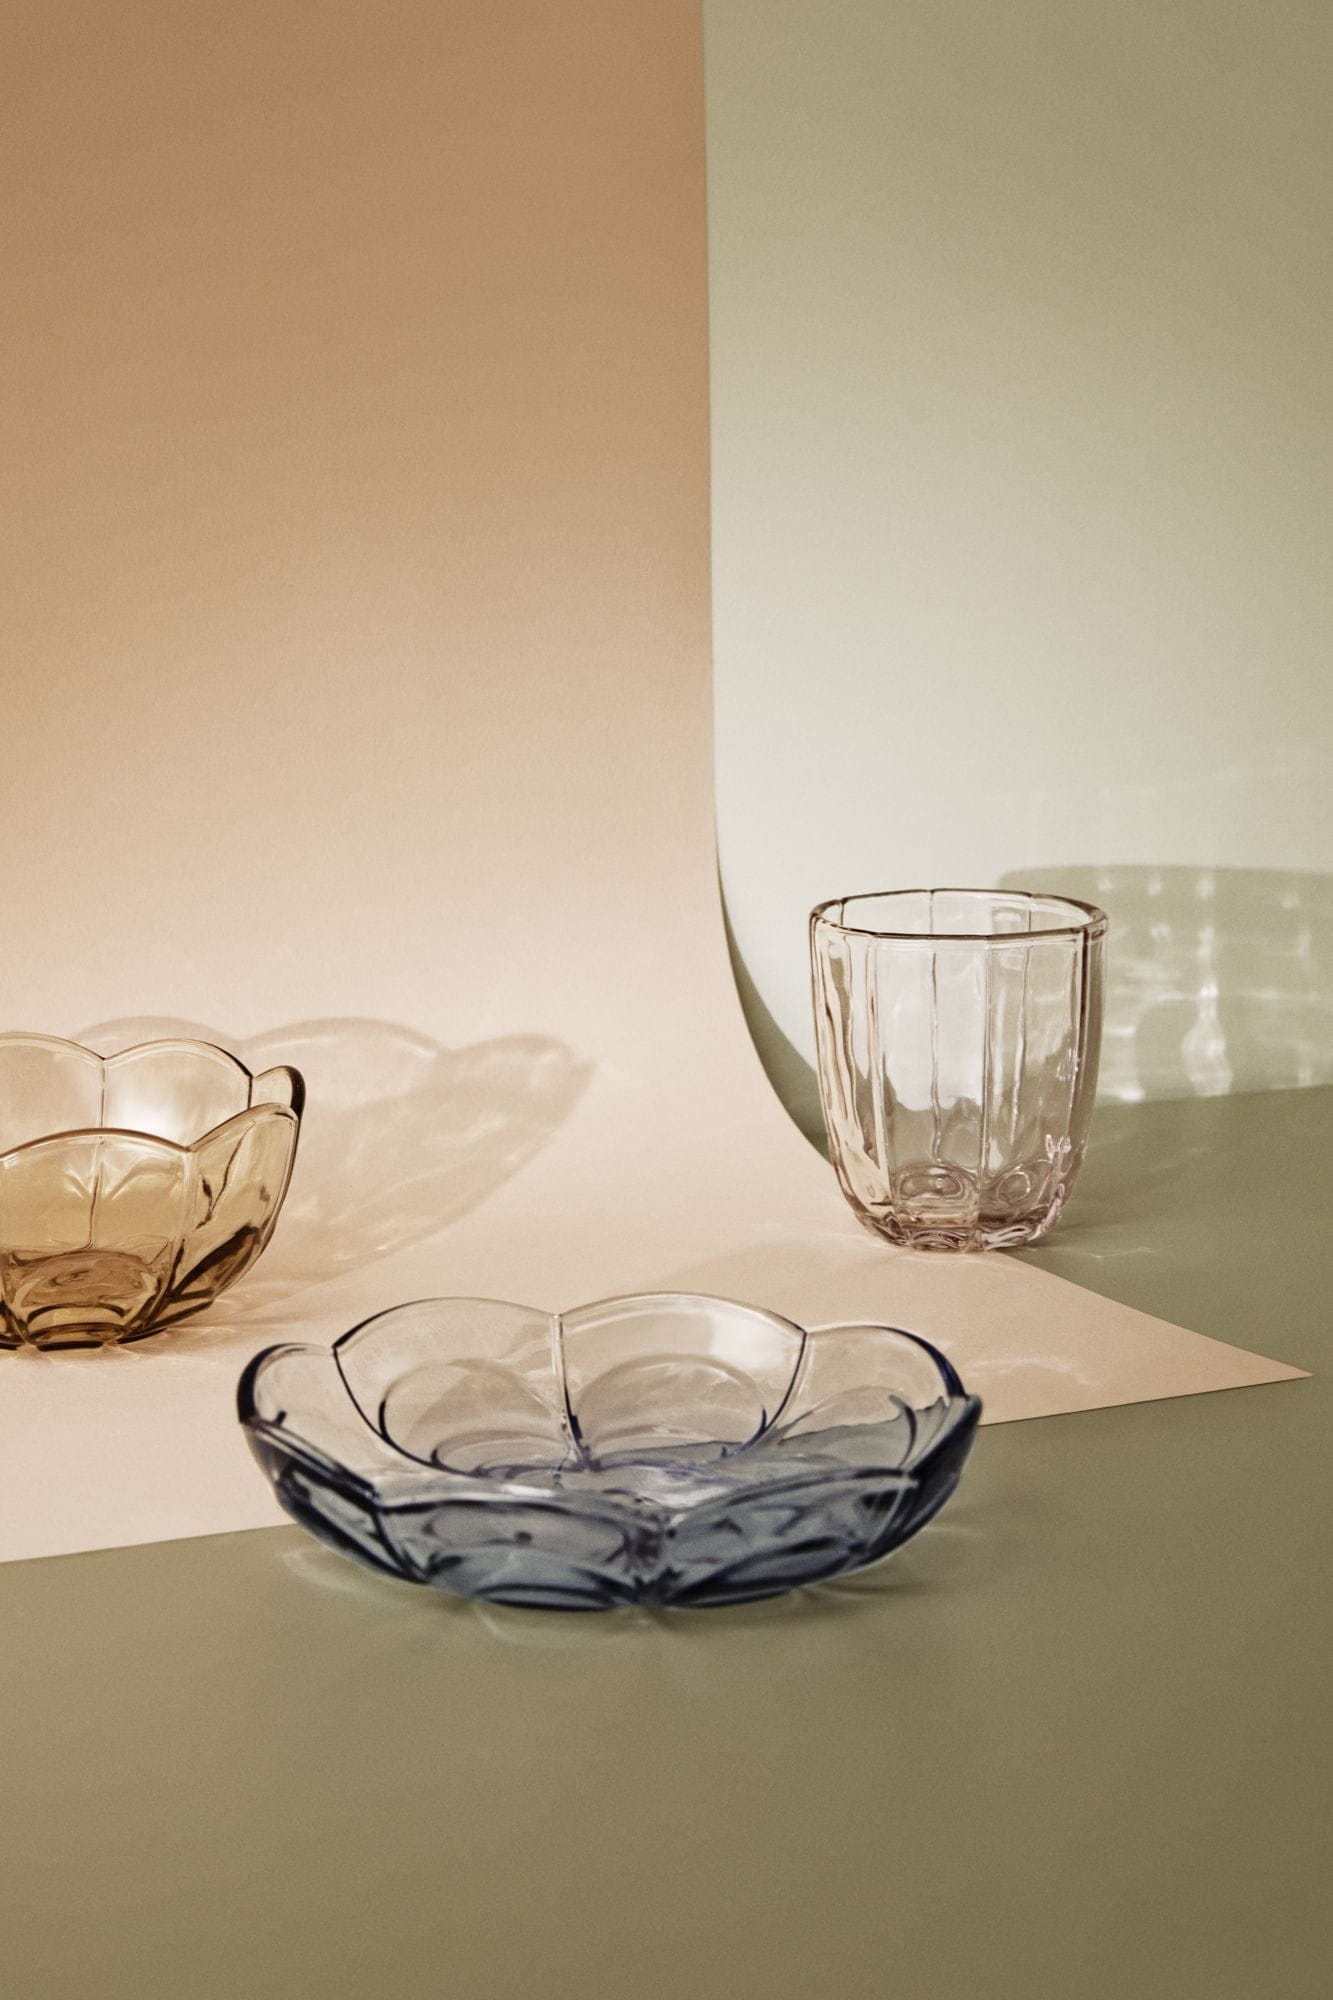 Holmegaard Lily Water Glass Zestaw 2 320 ml, różowy